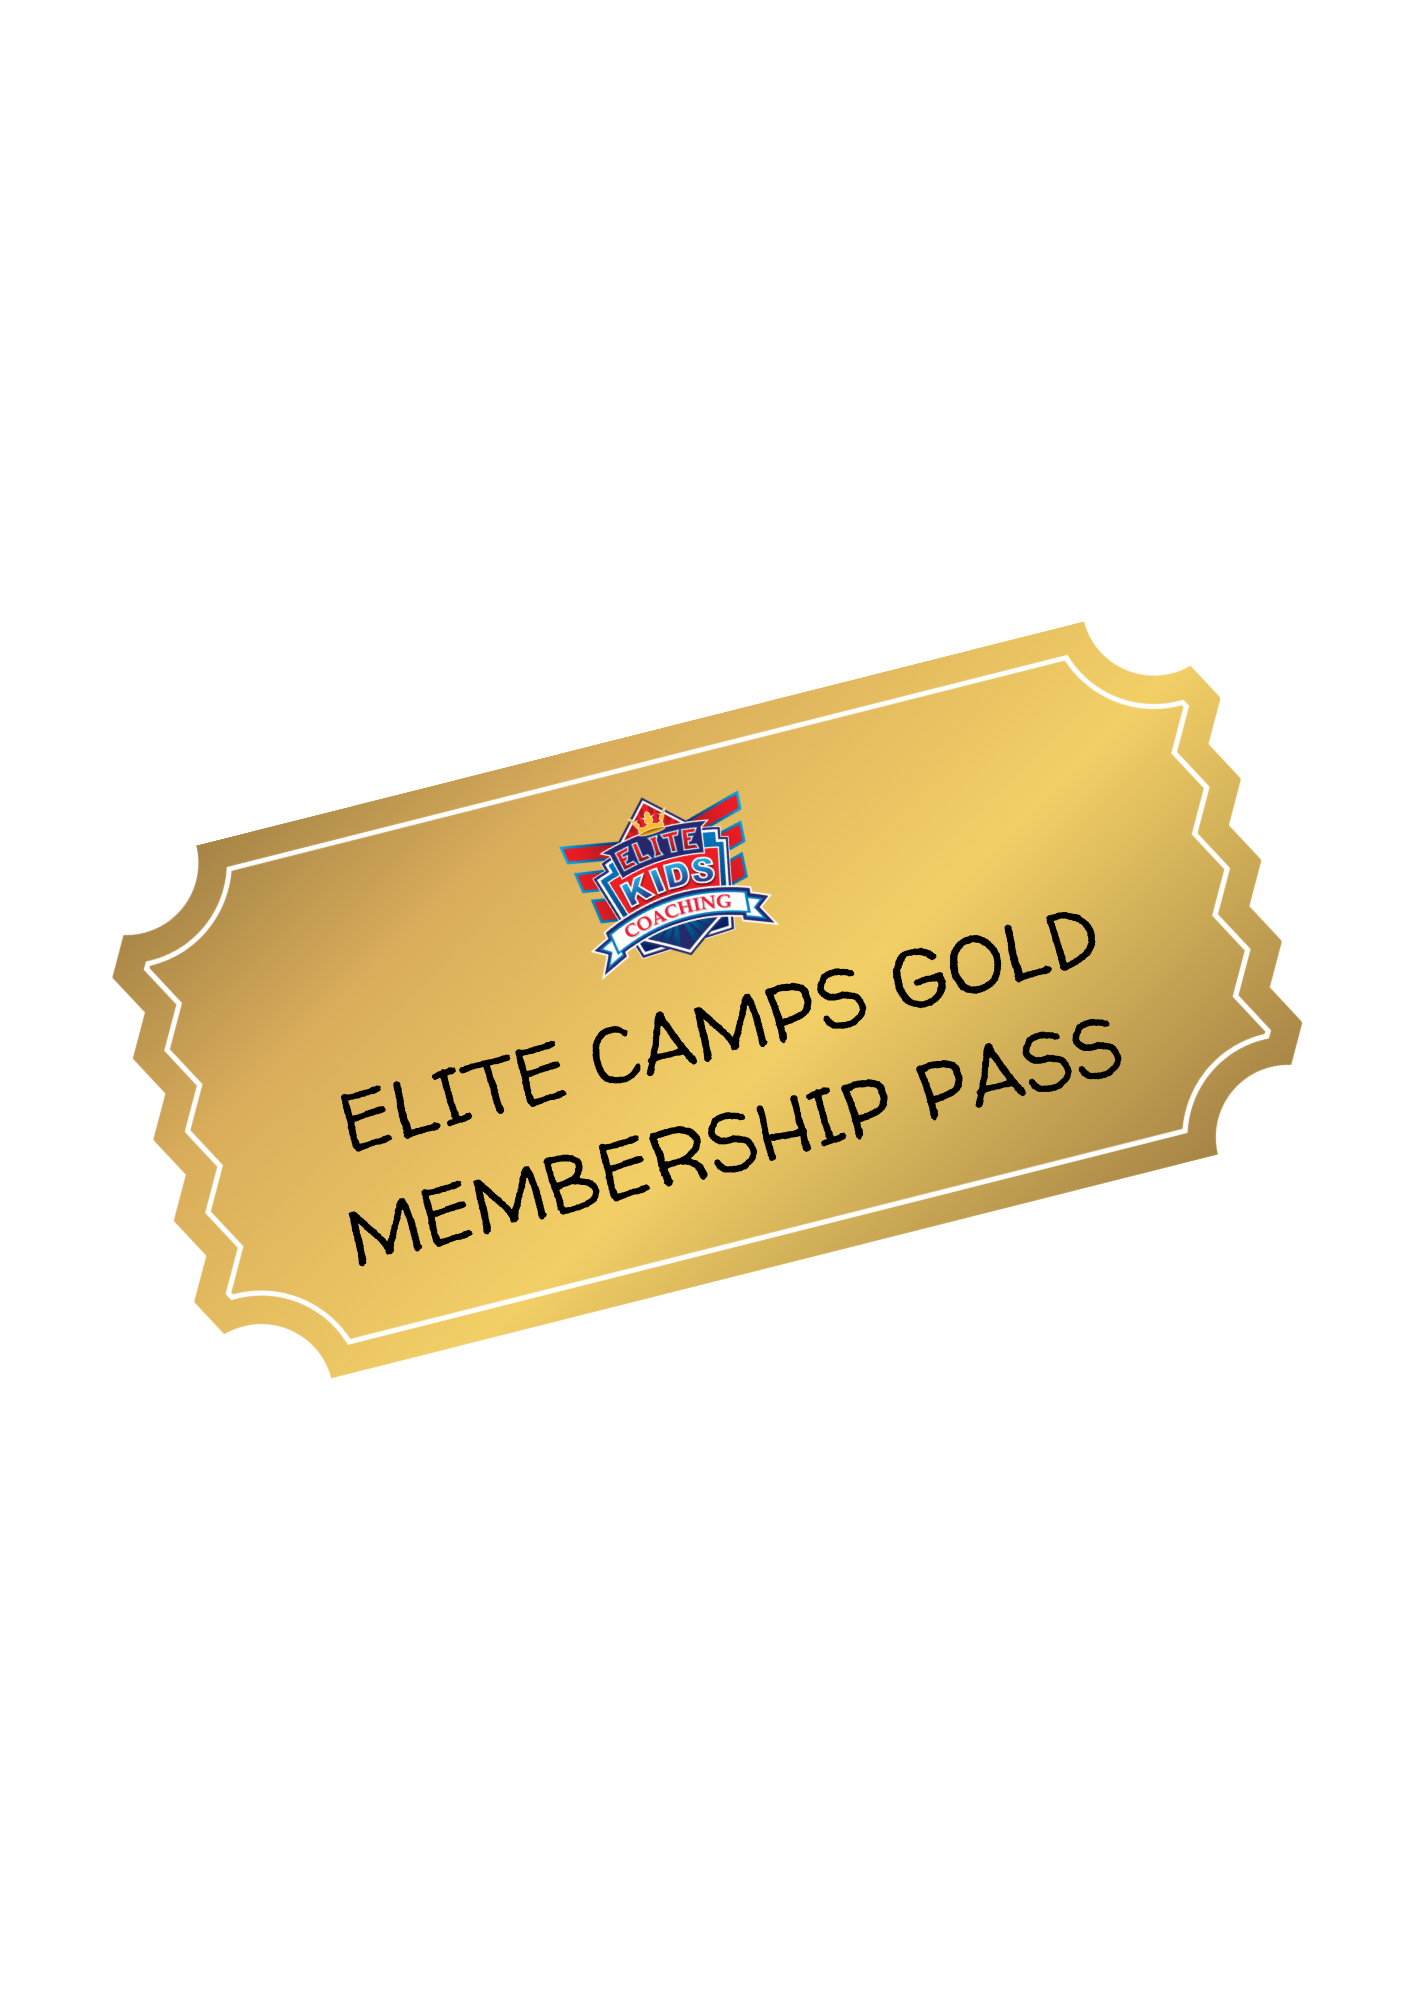 Elite Camps Gold Membership